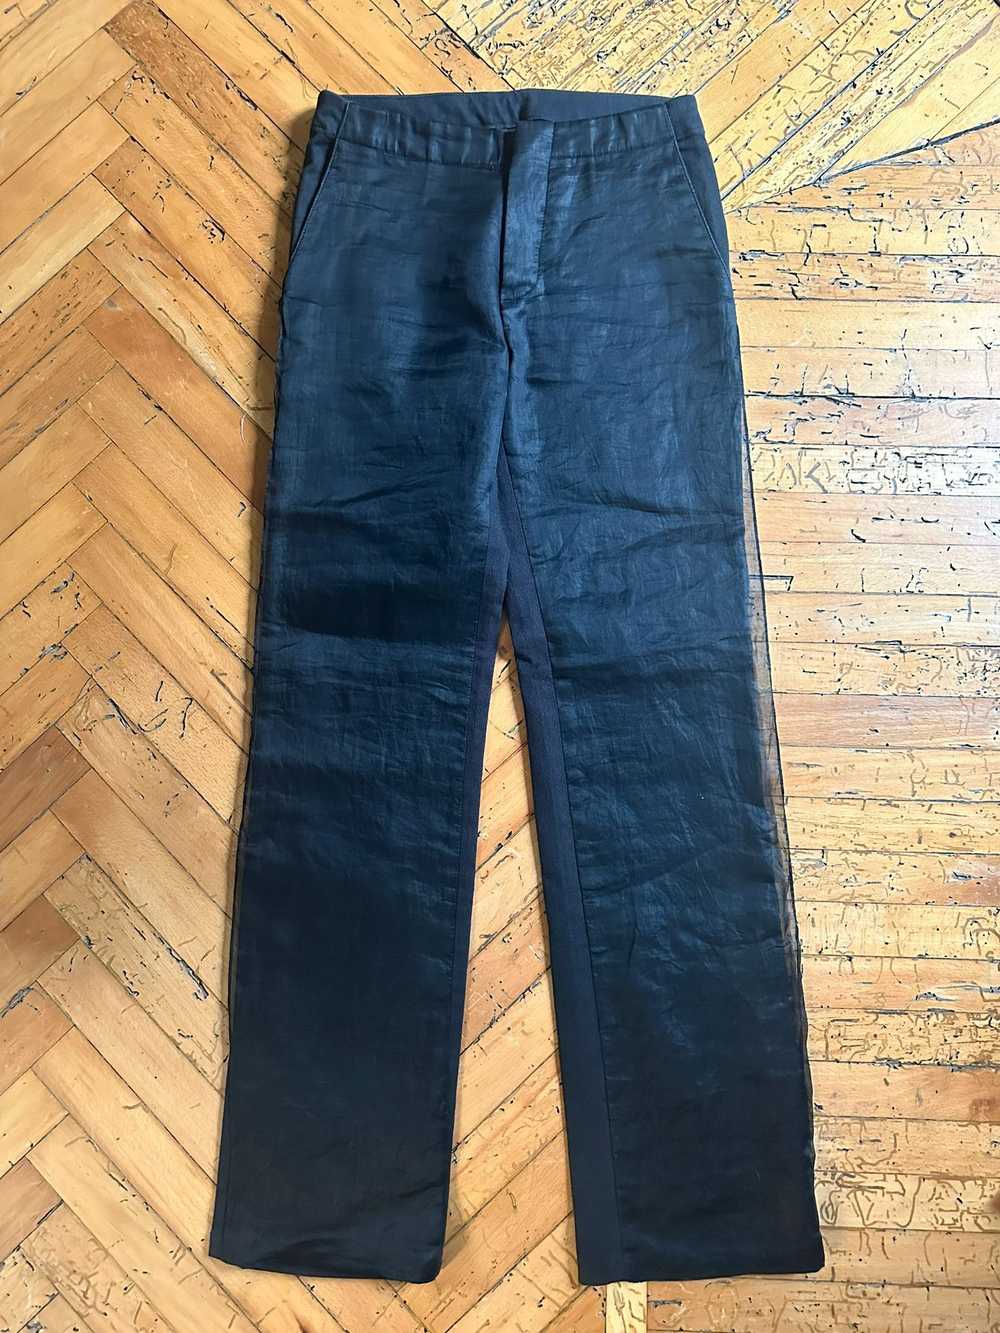 Helmut Lang AW1997 Layered Chiffon Jeans - image 2